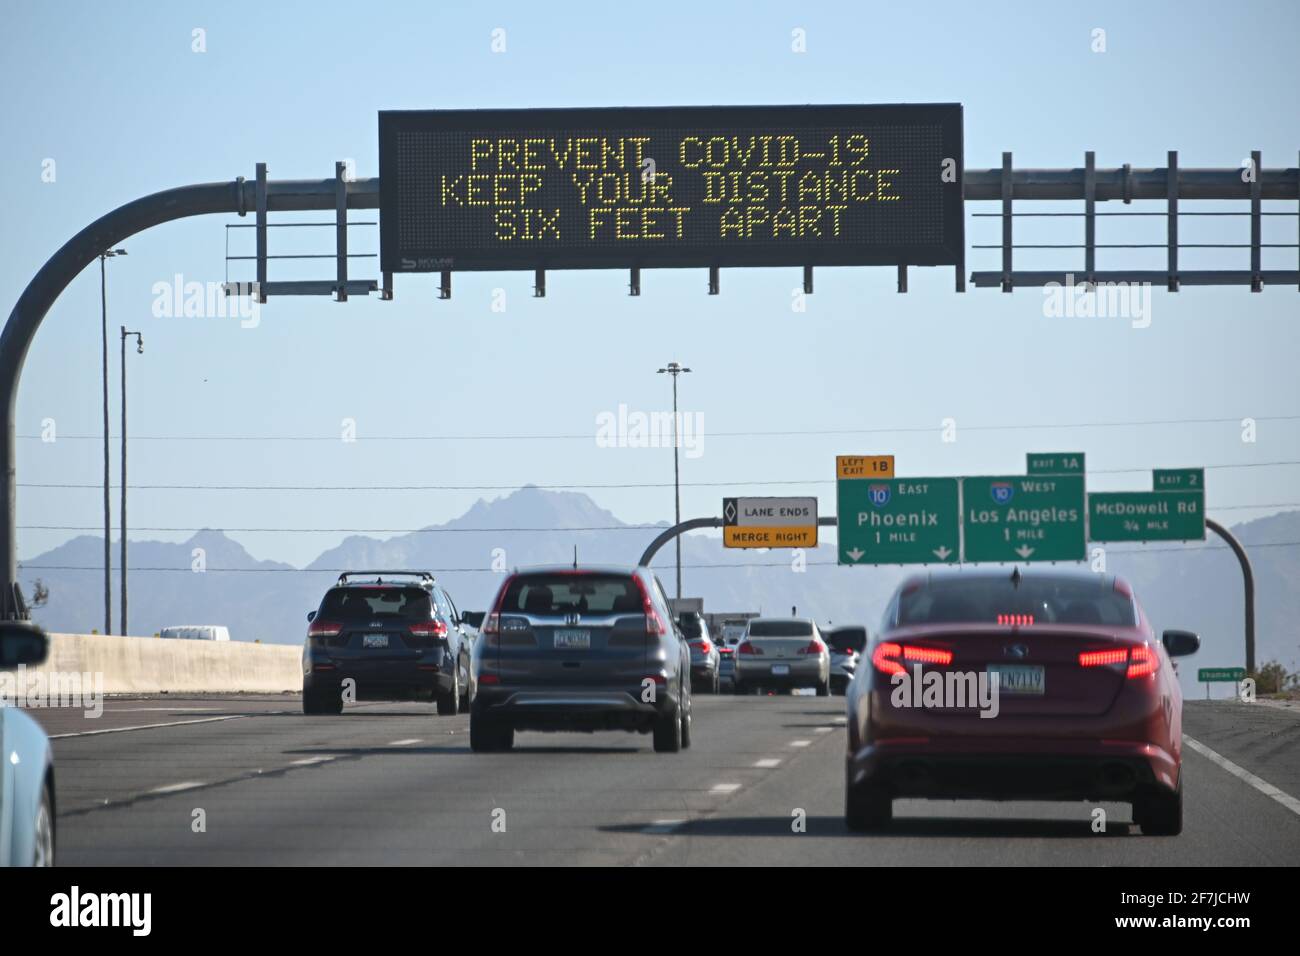 Schilder sind beleuchtet und warnen vor dem Ausbruch des neuartigen Coronavirus (COVID-19), Dienstag, 09. März 2021 in Phoenix, Arizona. (Dylan Stewart/Image of Sport) Stockfoto